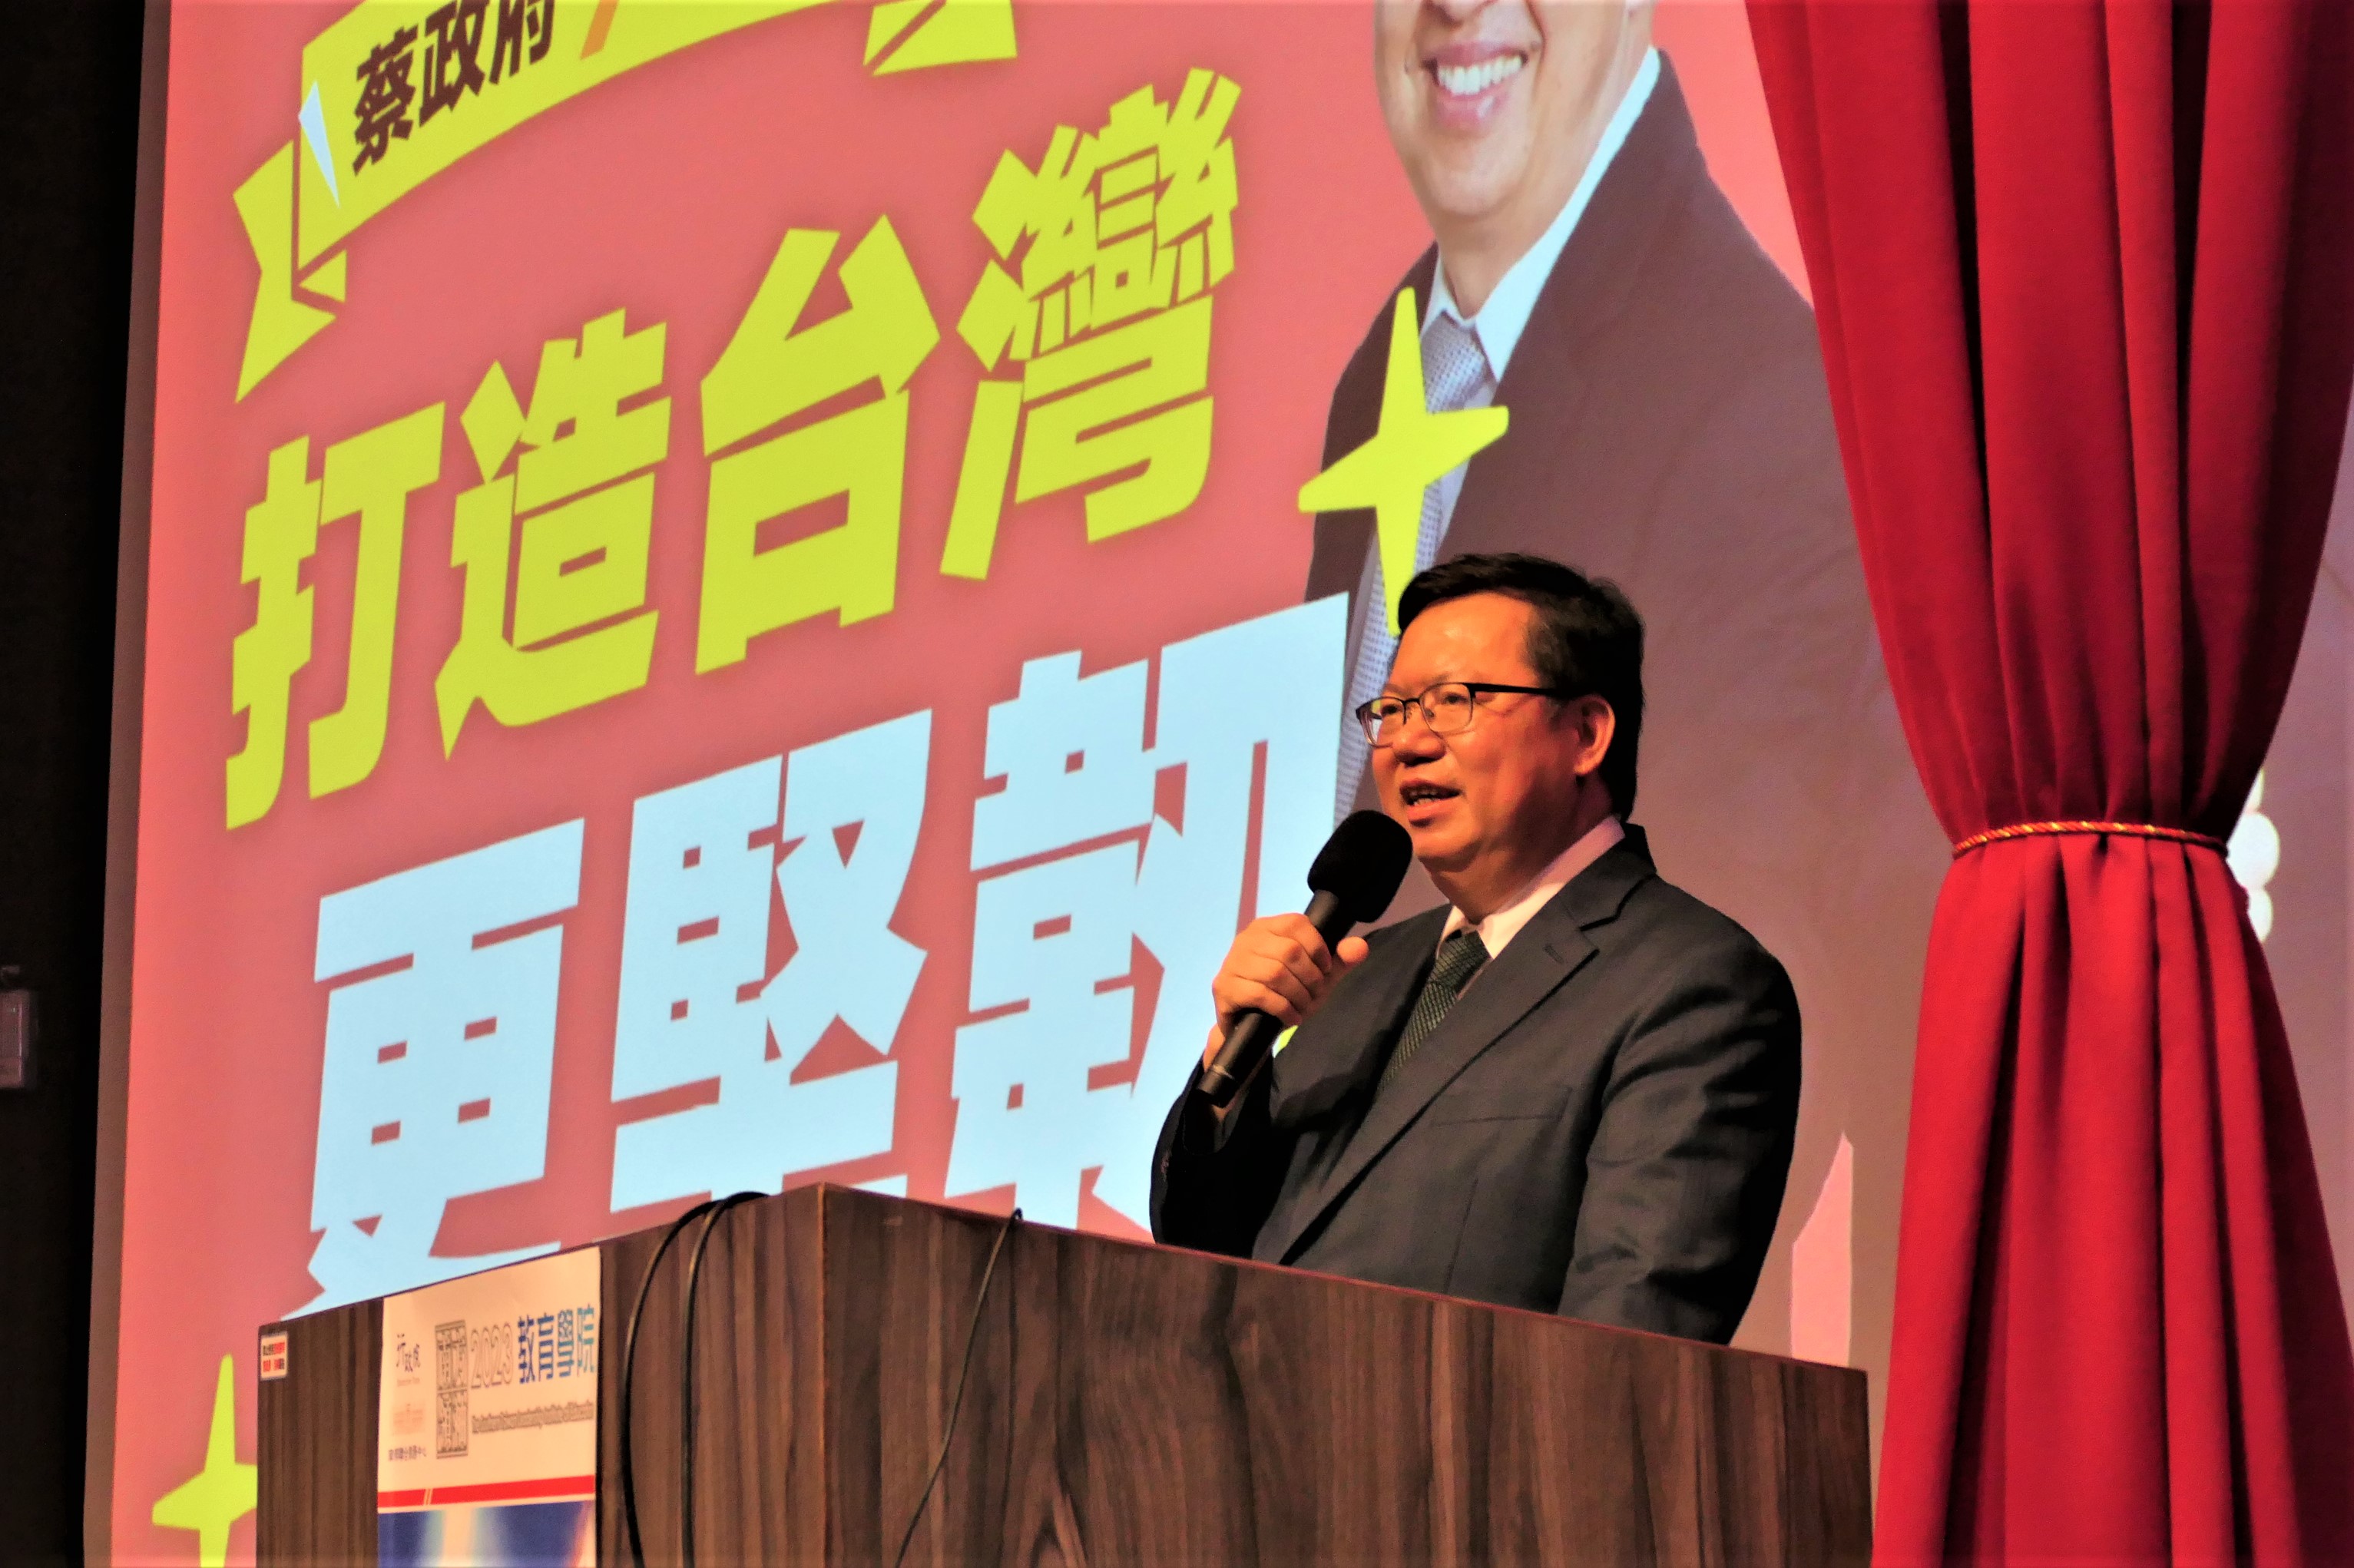 行政院鄭文燦副院長南下高雄 演講主題「打造台灣更堅韌」